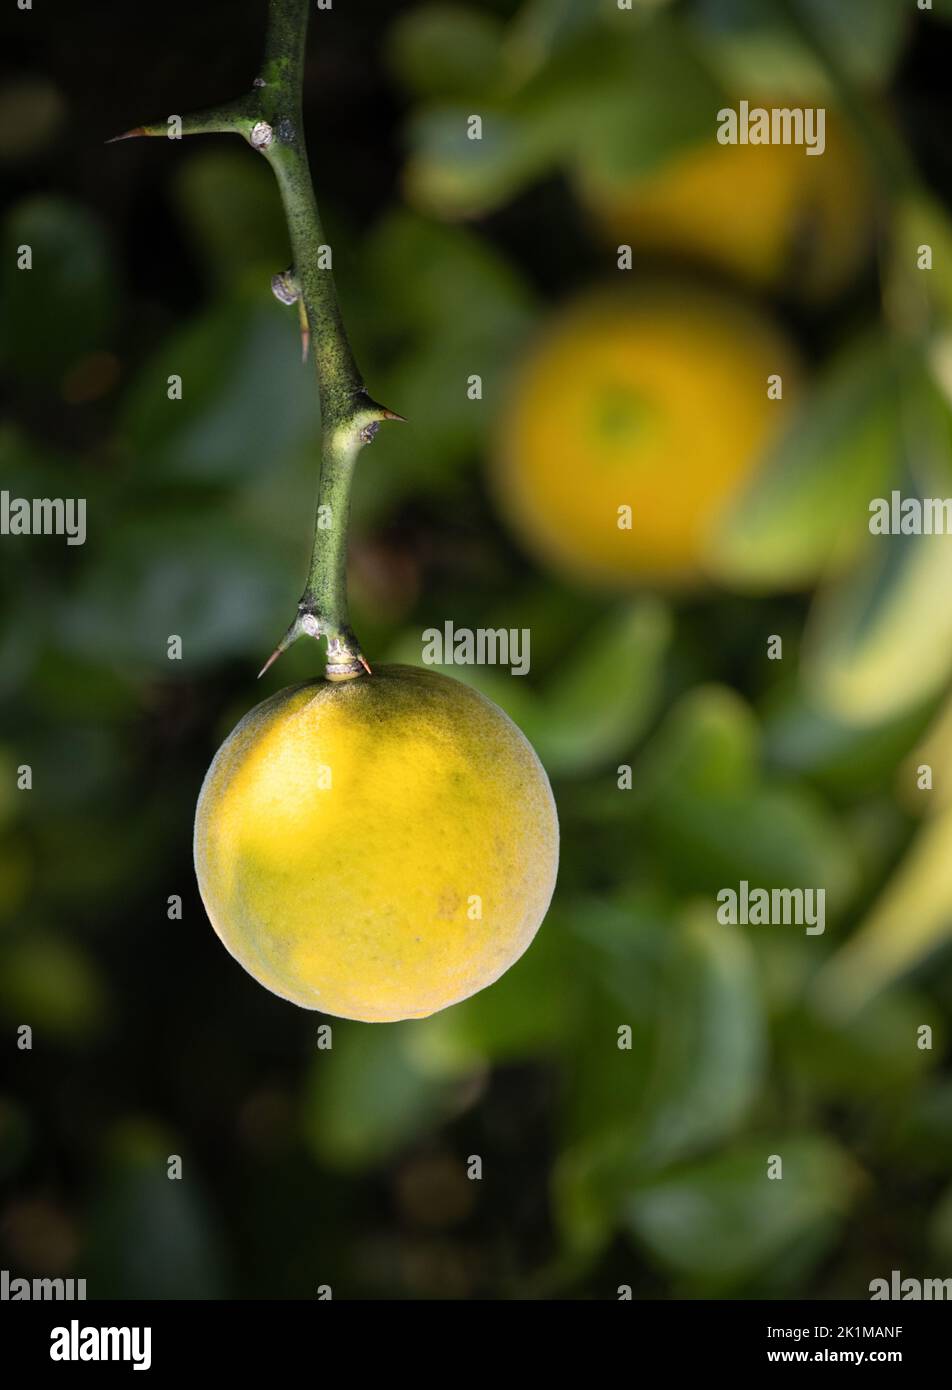 Petits citrons ronds jaunes, citrus limon, accrochés sur un citronnier avec des feuilles et des épines au soleil, été ou automne, Lancaster, Pennsylvanie Banque D'Images